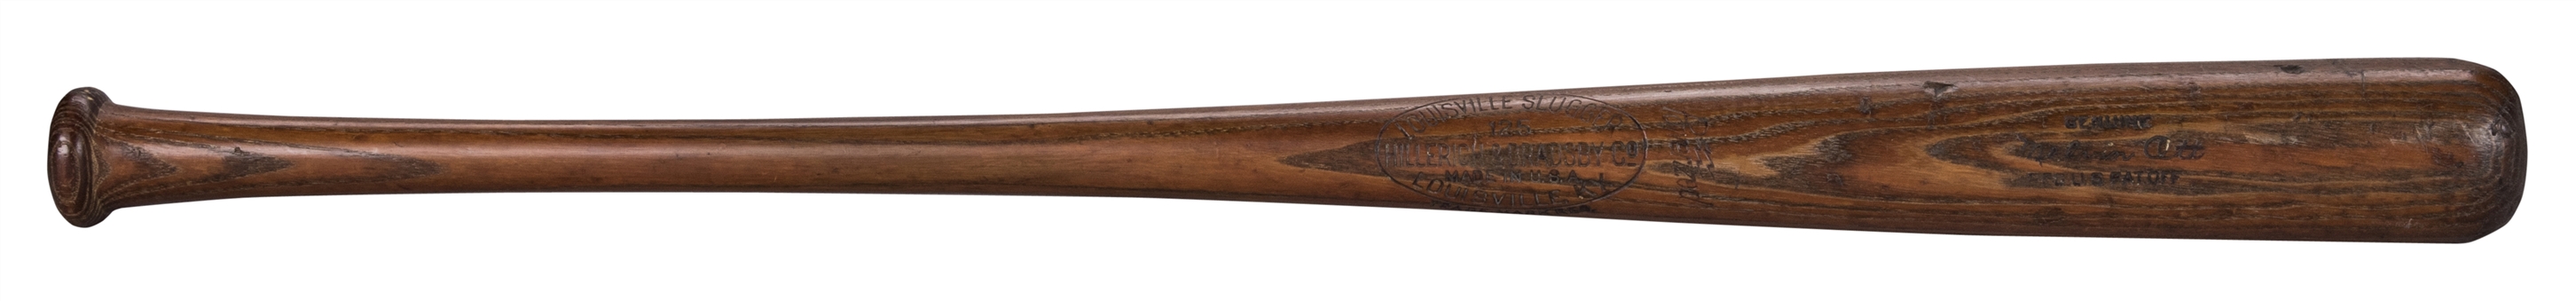 1934-37 Mel Ott Game Used Hillerich & Bradsby Model Bat (MEARS)